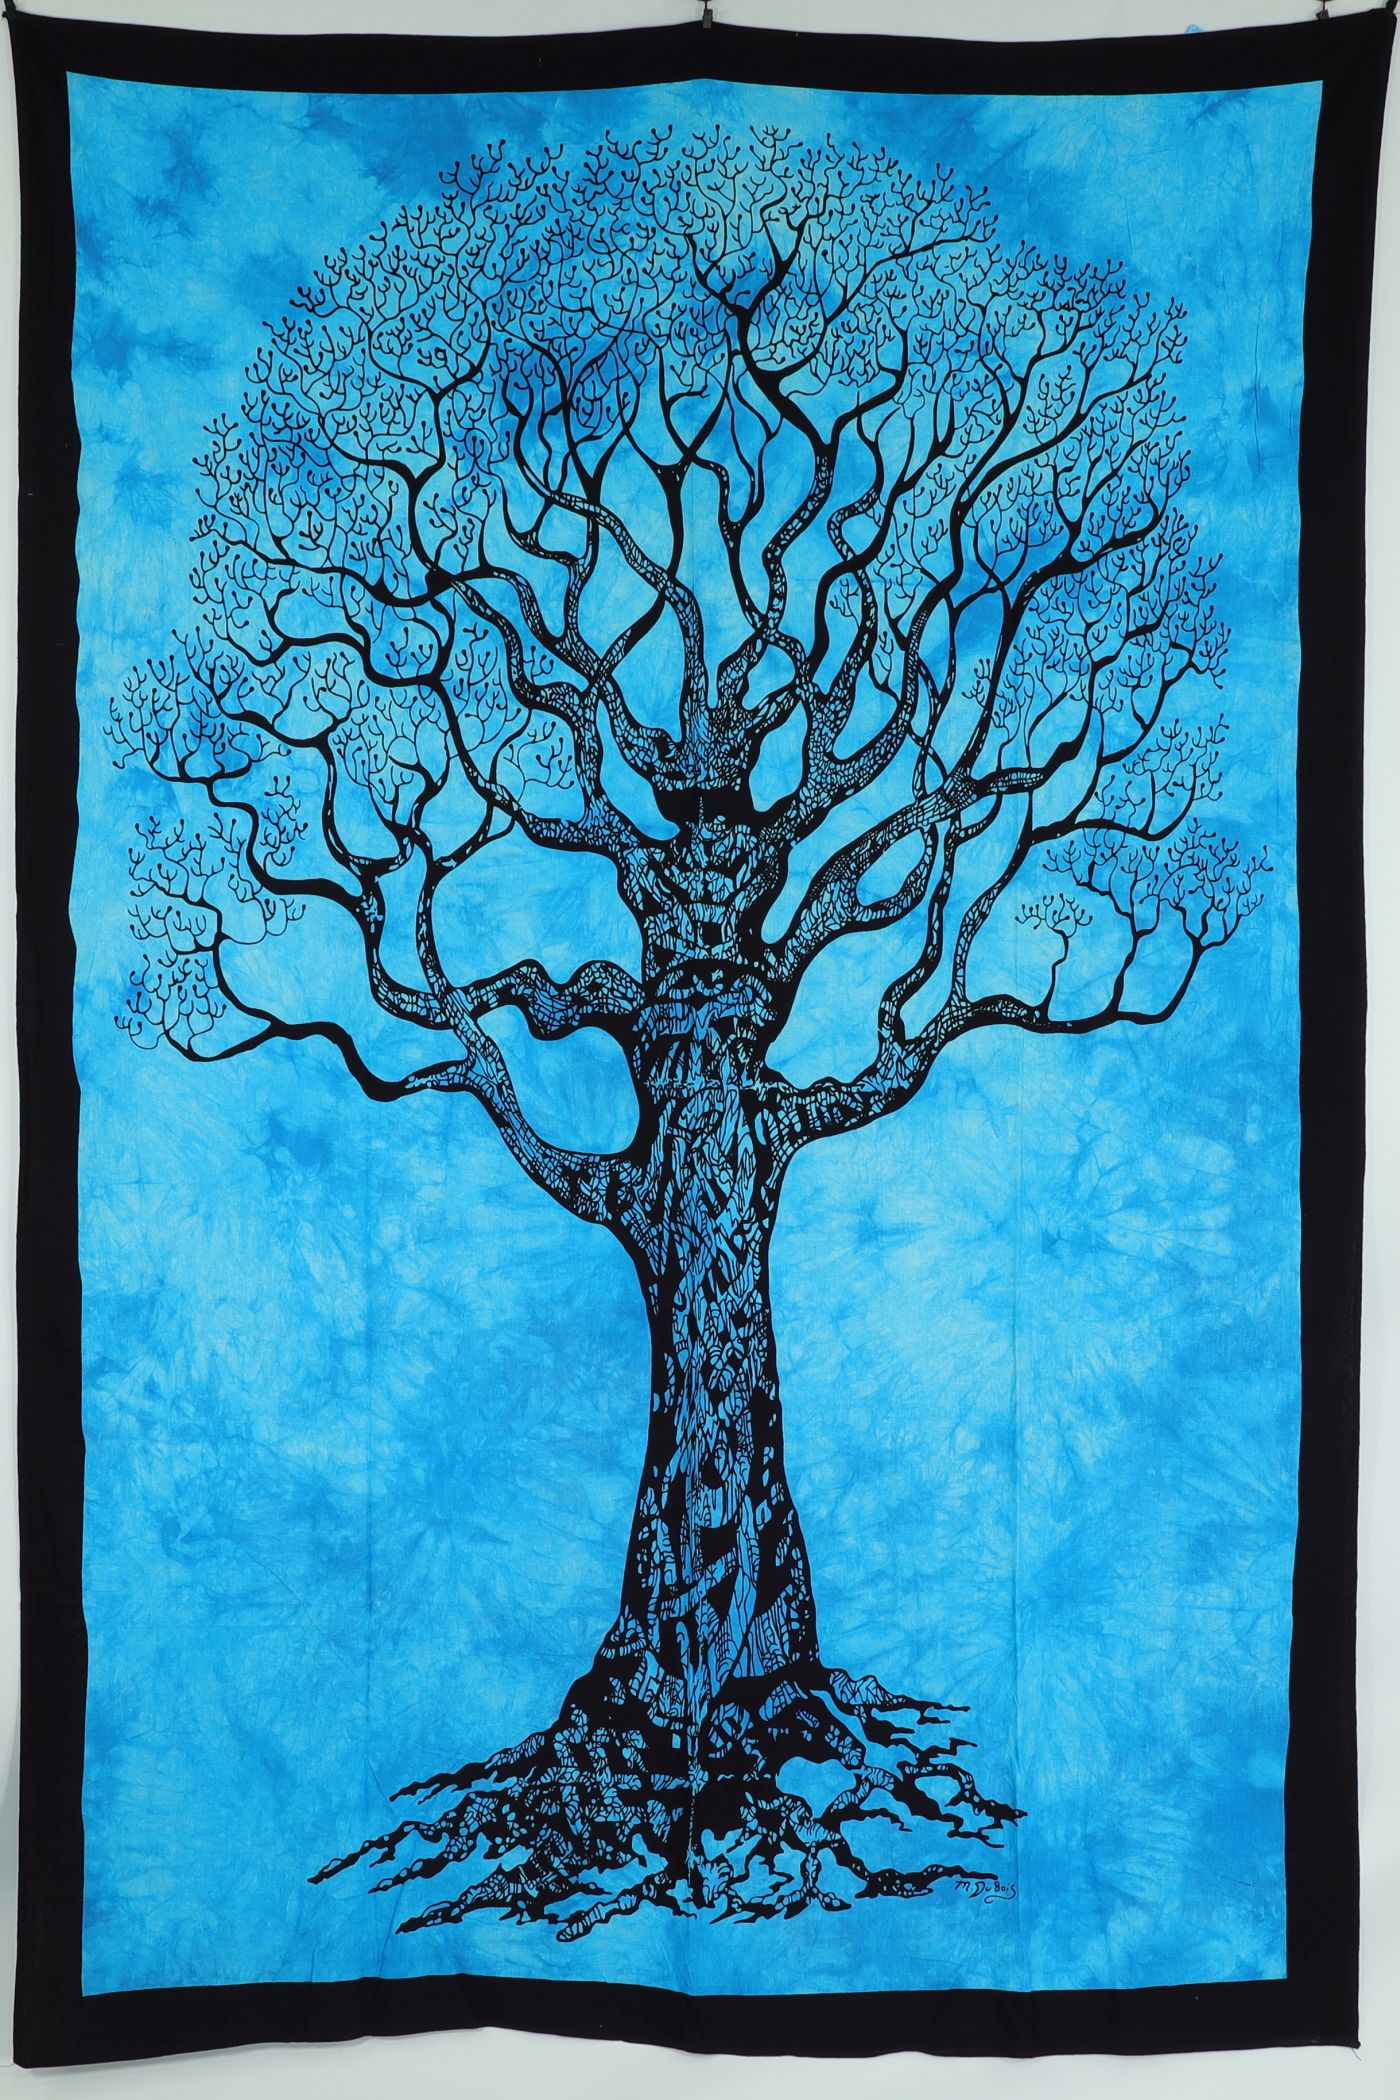 Wandtuch XL 130x210 - Baum des Lebens - 100% Baumwolle - detailreicher indischer Druck - Batik - dekoratives Tuch, Wandbild, Tagesdecke, Bedcover, Vorhang, Picknick-Decke, Strandtuch